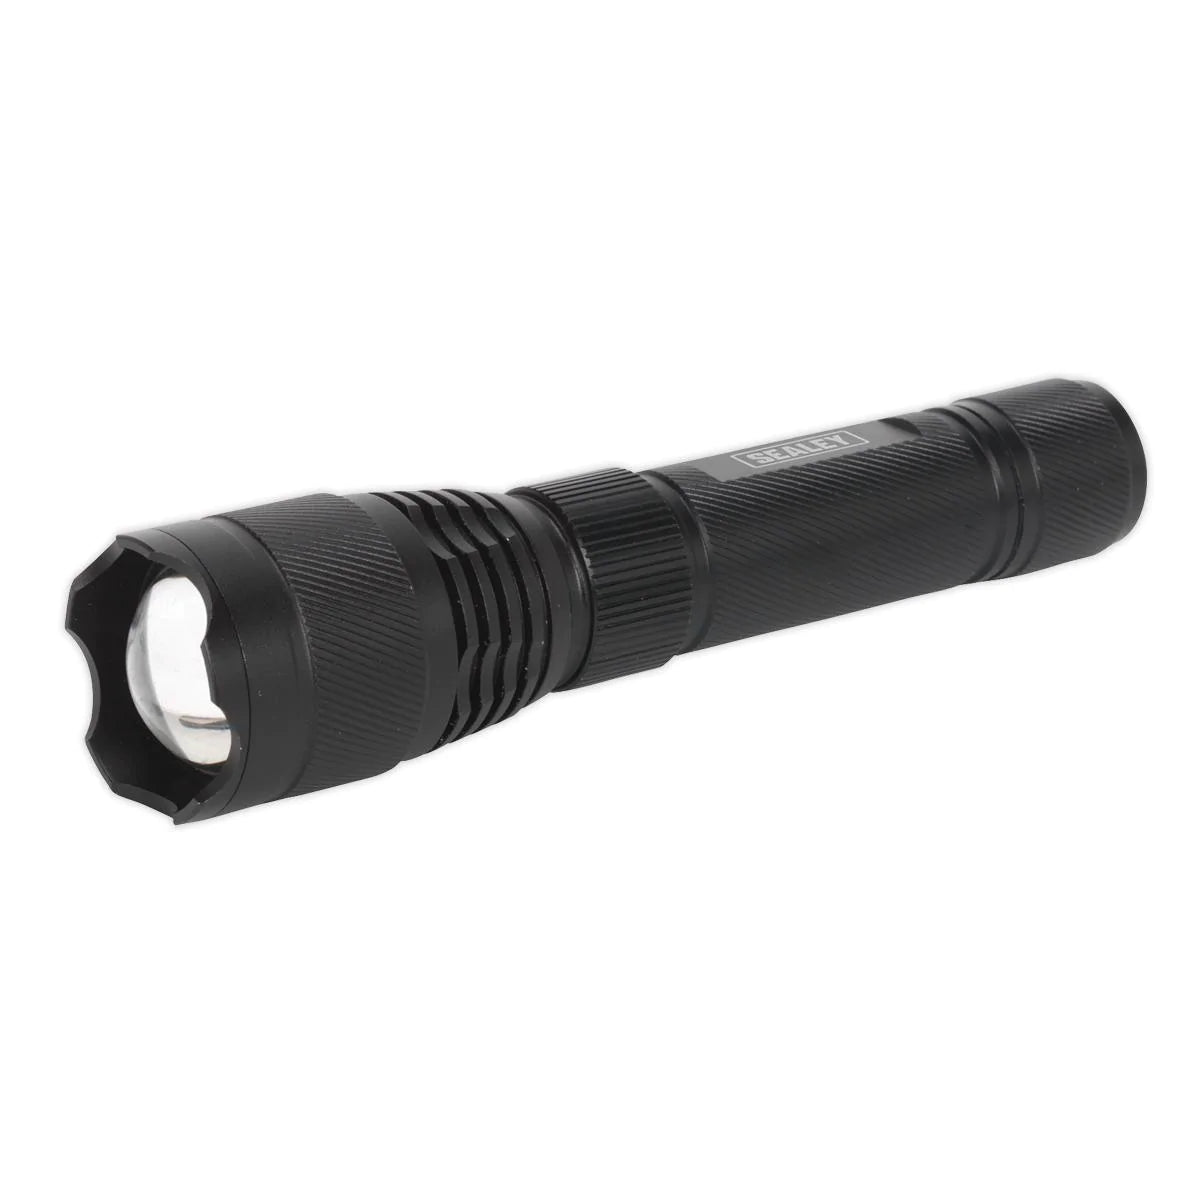 铝制手电筒 10W CREE* XPL LED 可调节焦距 可充电 带 USB 端口